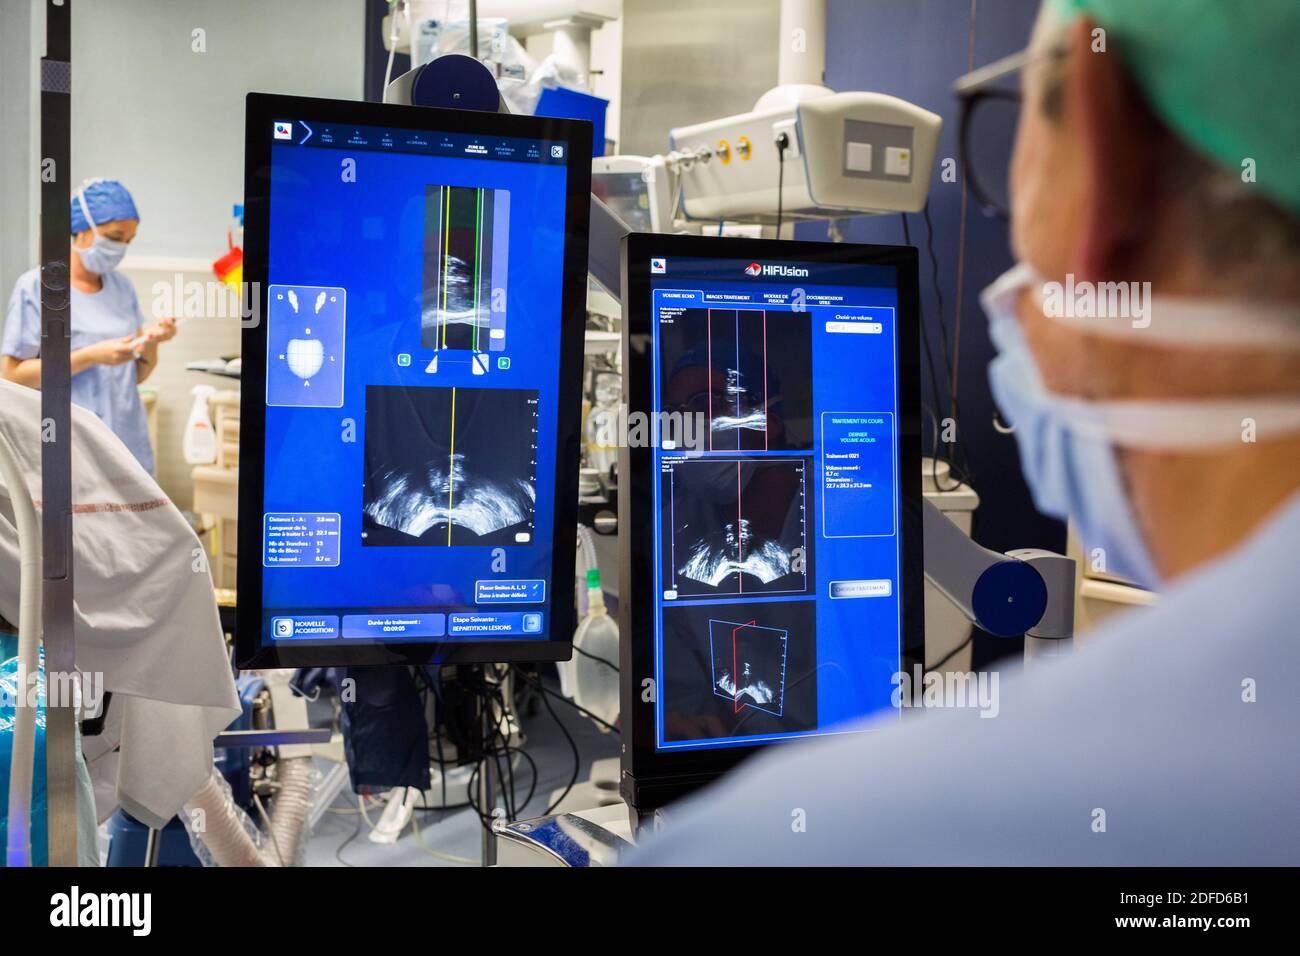 Trattamento del cancro prostatico con ultrasuoni focali ad alta intensità (Focal-one), ospedale di Bordeaux, Francia. Foto Stock